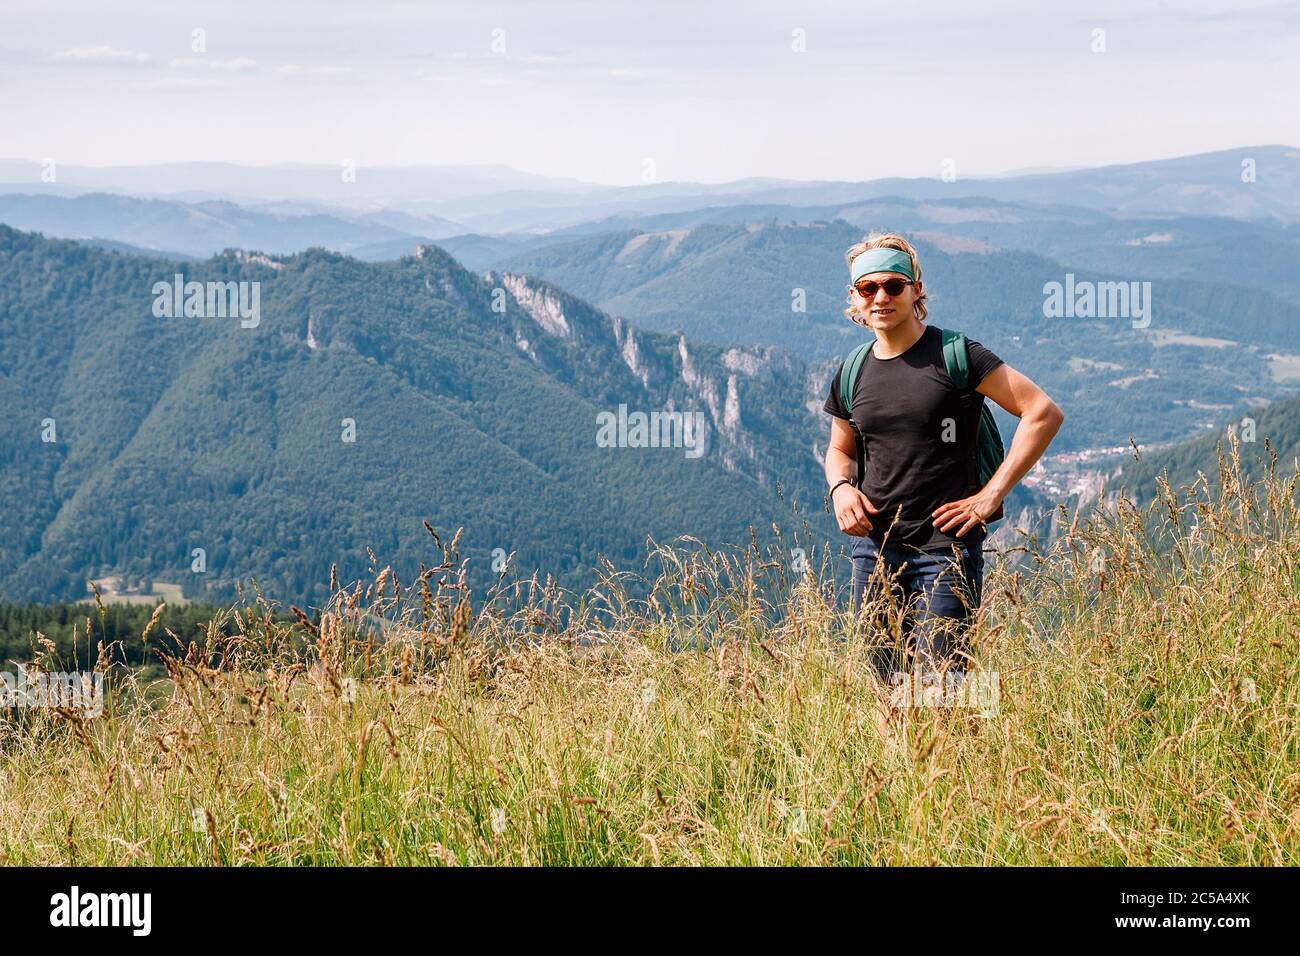 Junge kaukasische Teenager-Backpacker, die im hohen Gras an der Mala Fatra Bergkette in der Slowakischen Tatra spazieren und die Aussicht auf das Tal genießen. Acti Stockfoto